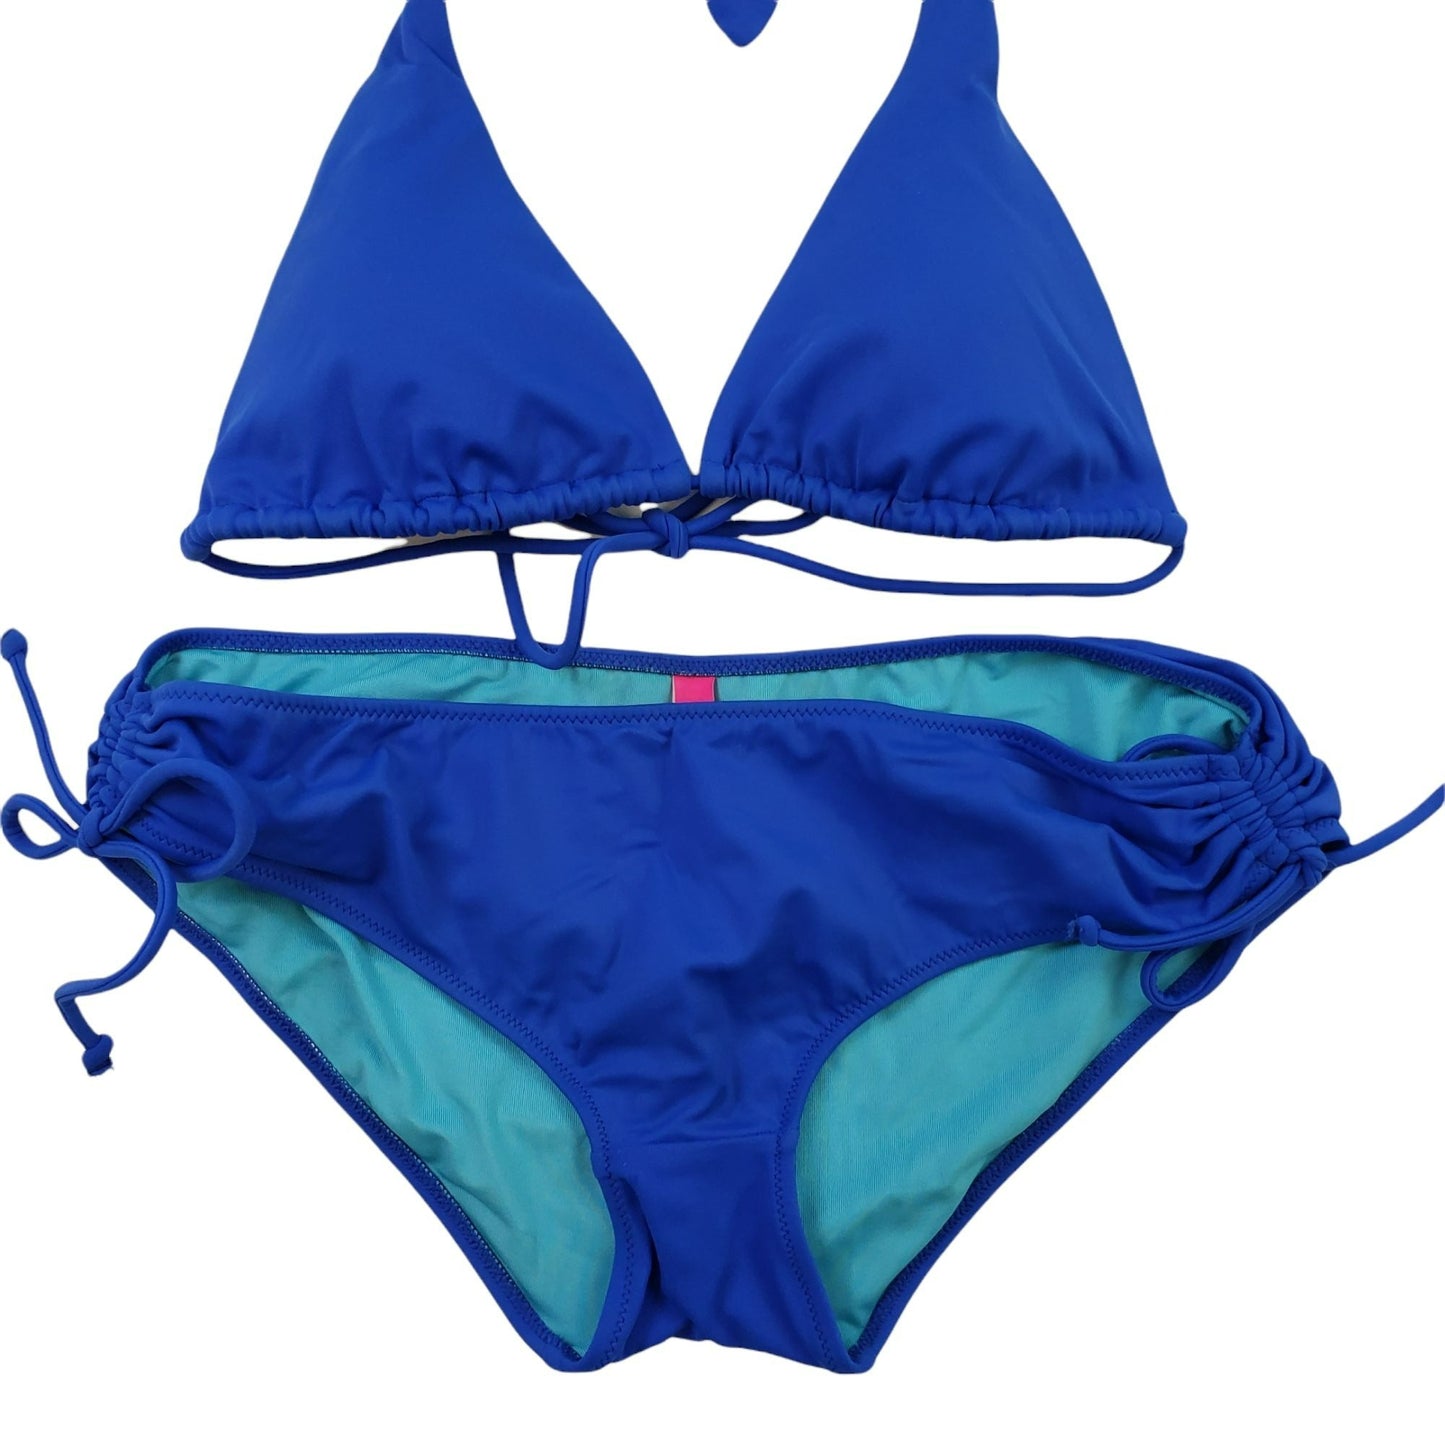 Victoria's Secret Bright Blue Bikini - Top Size M, Bottoms Size S.